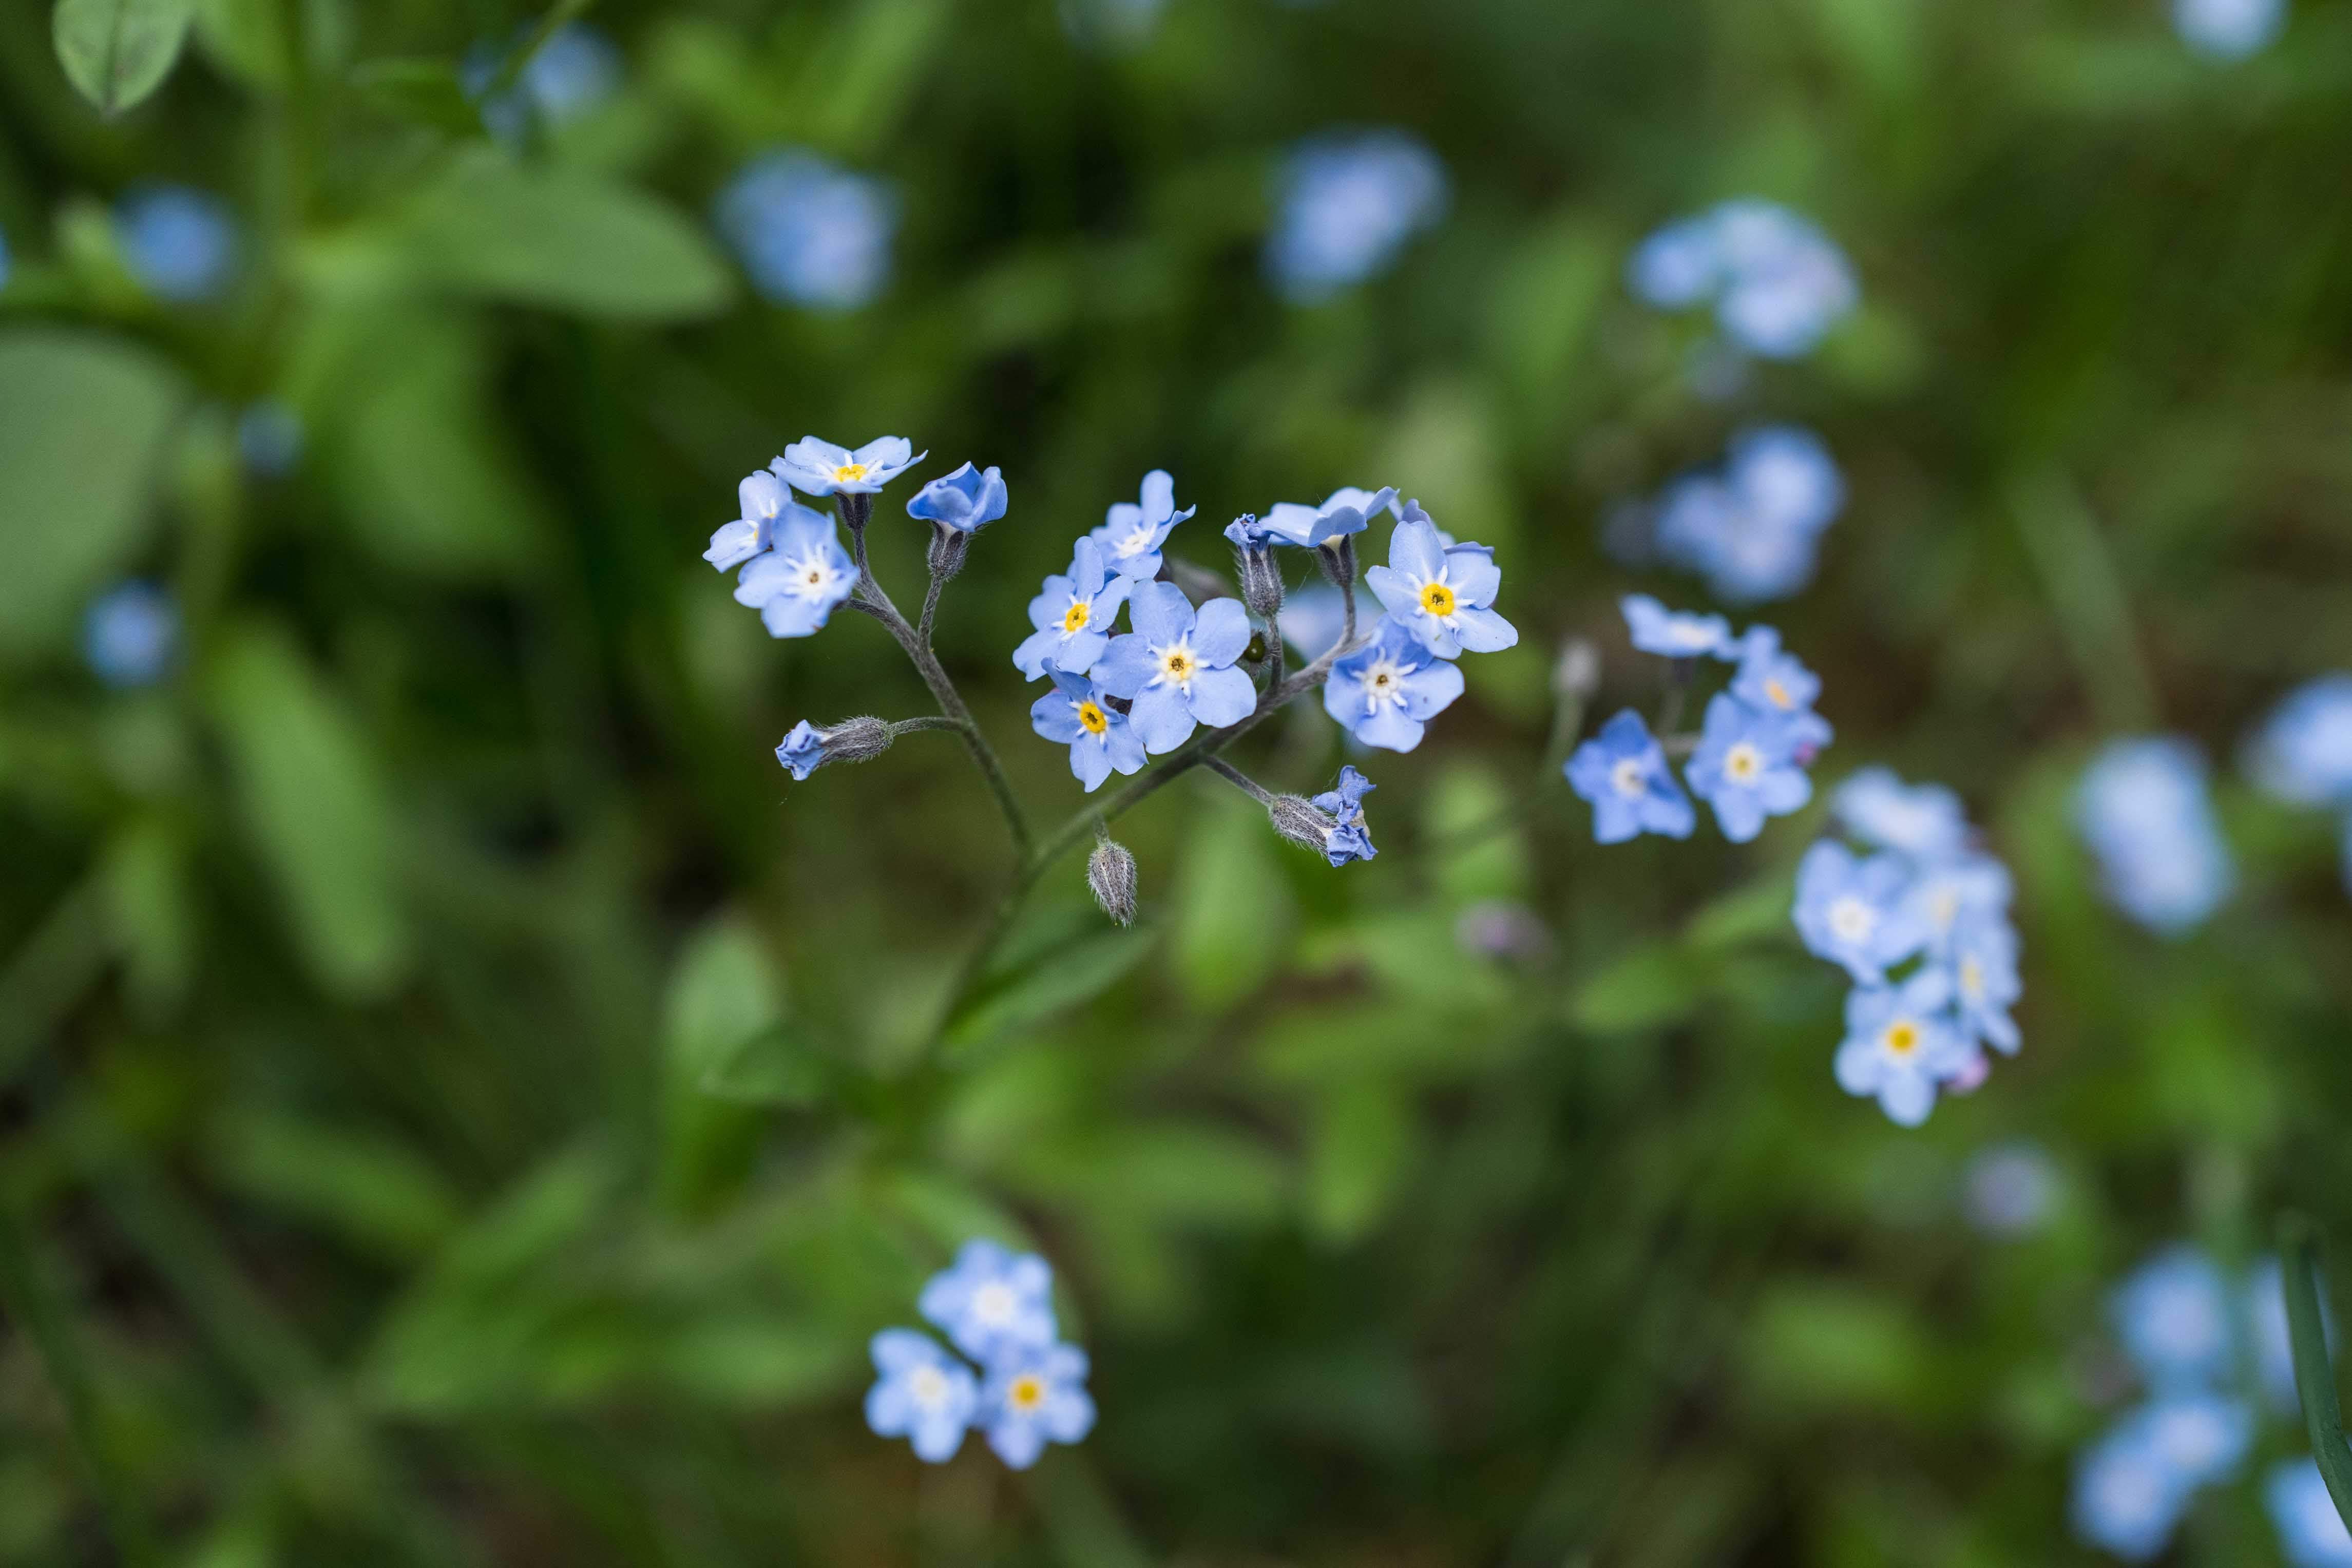 zu sehen sind die babyblauen Blüten der Vergissmeinnicht Blume. Im Hintergrund dunkelgrünes Gras ganz unscharf zu sehen